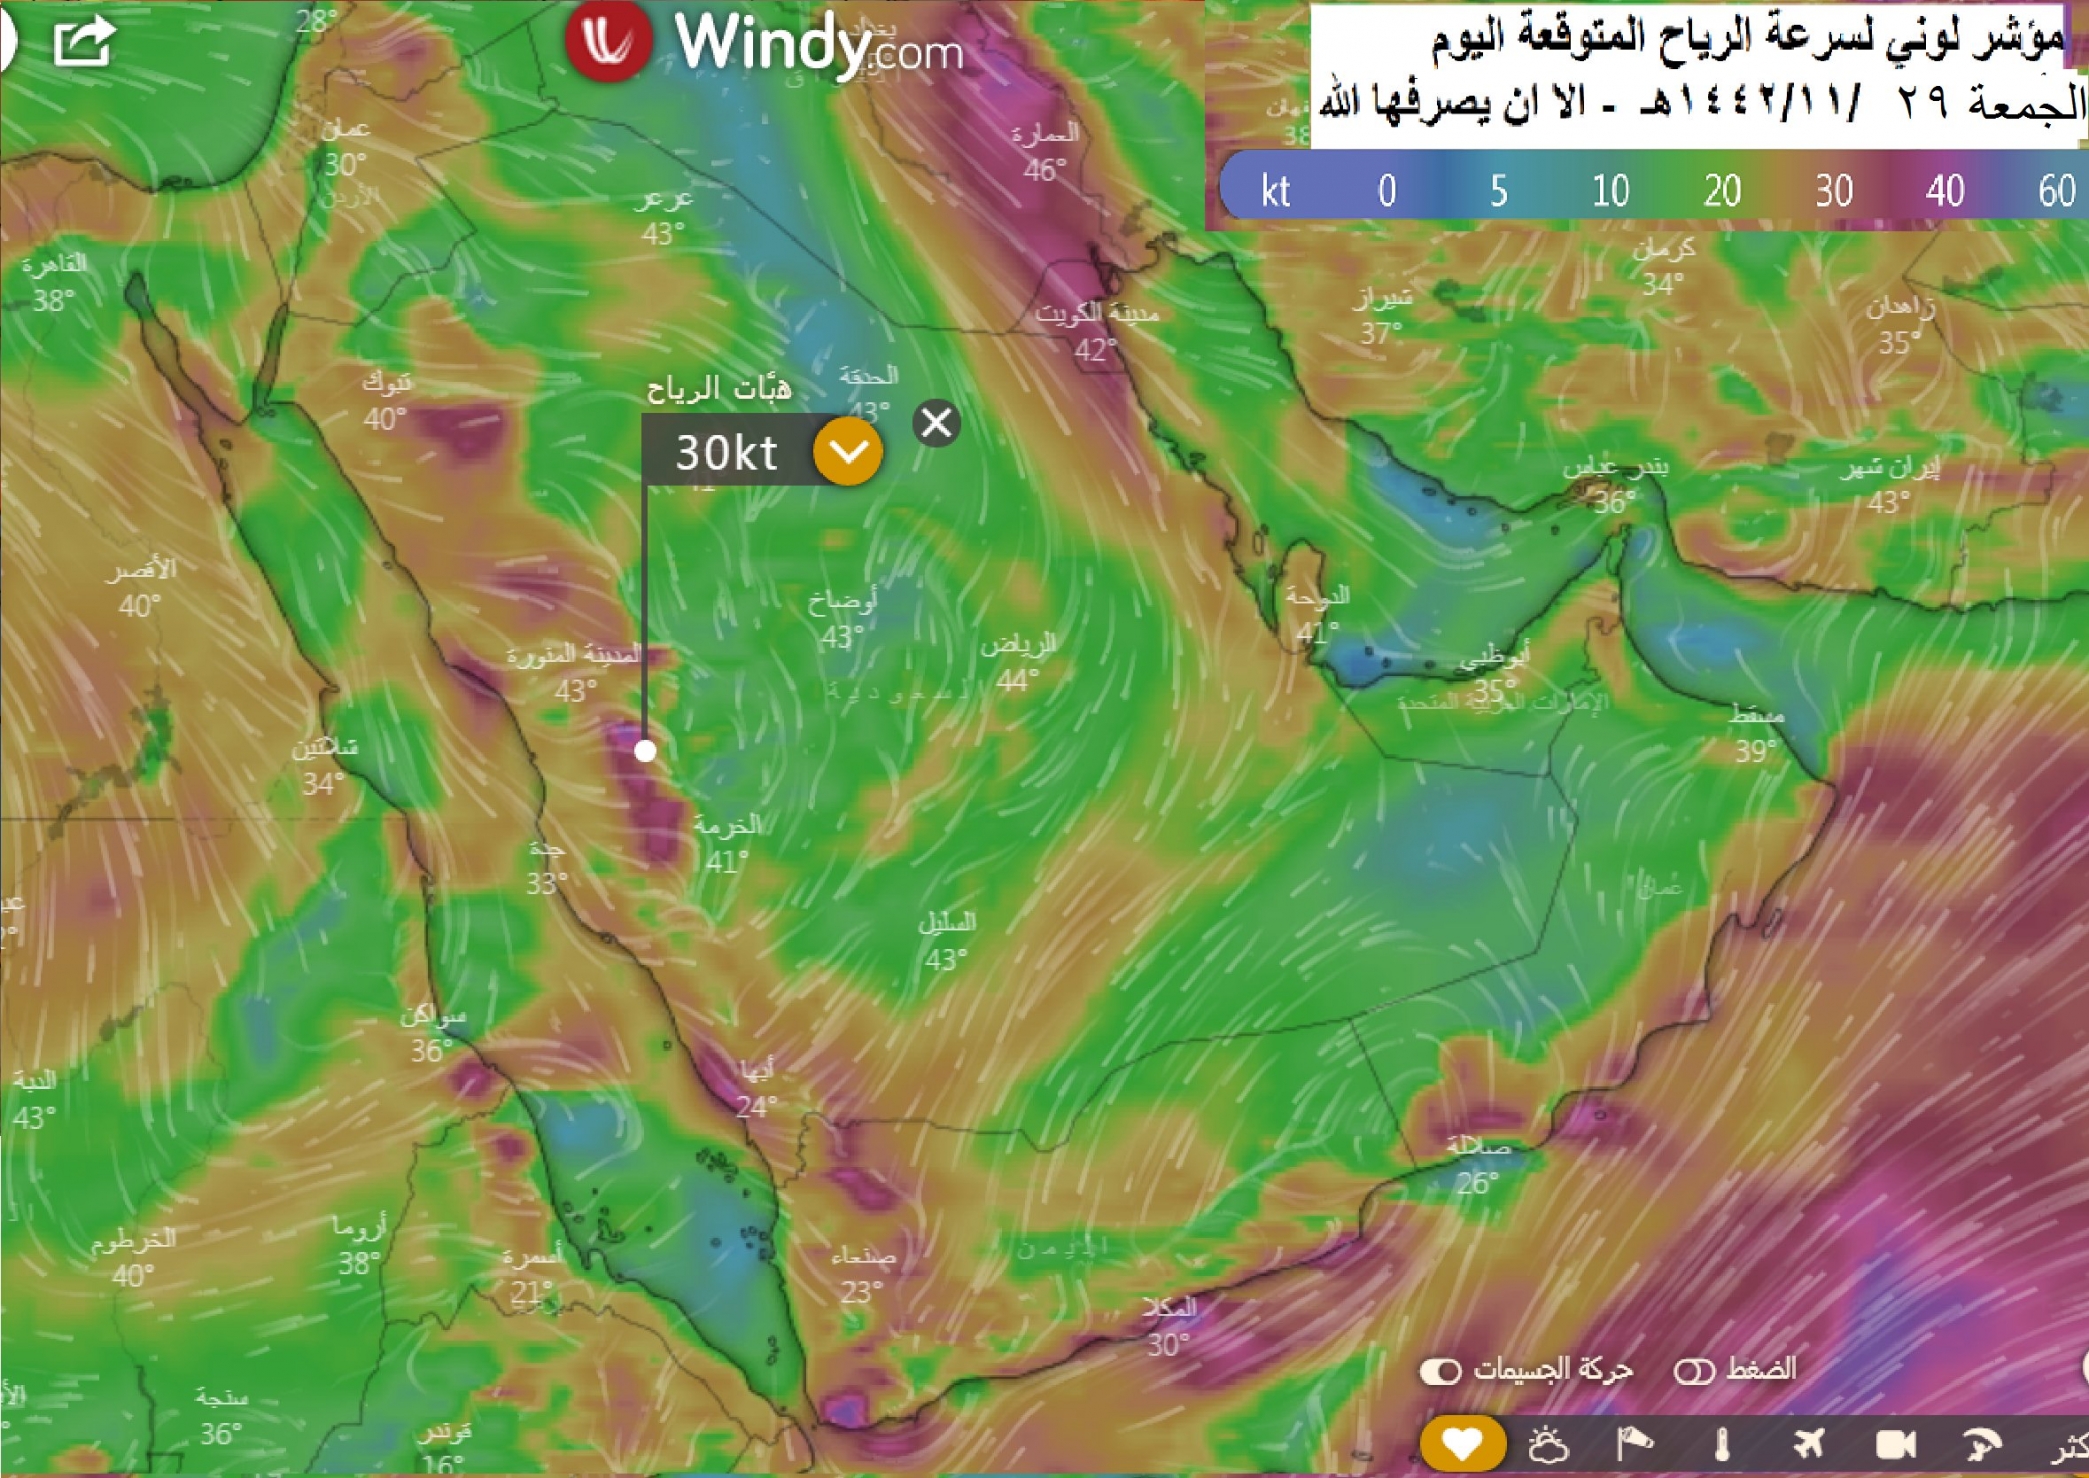 الحصيني : أجواء السعودية حارة جدًا اليوم على معظم المناطق